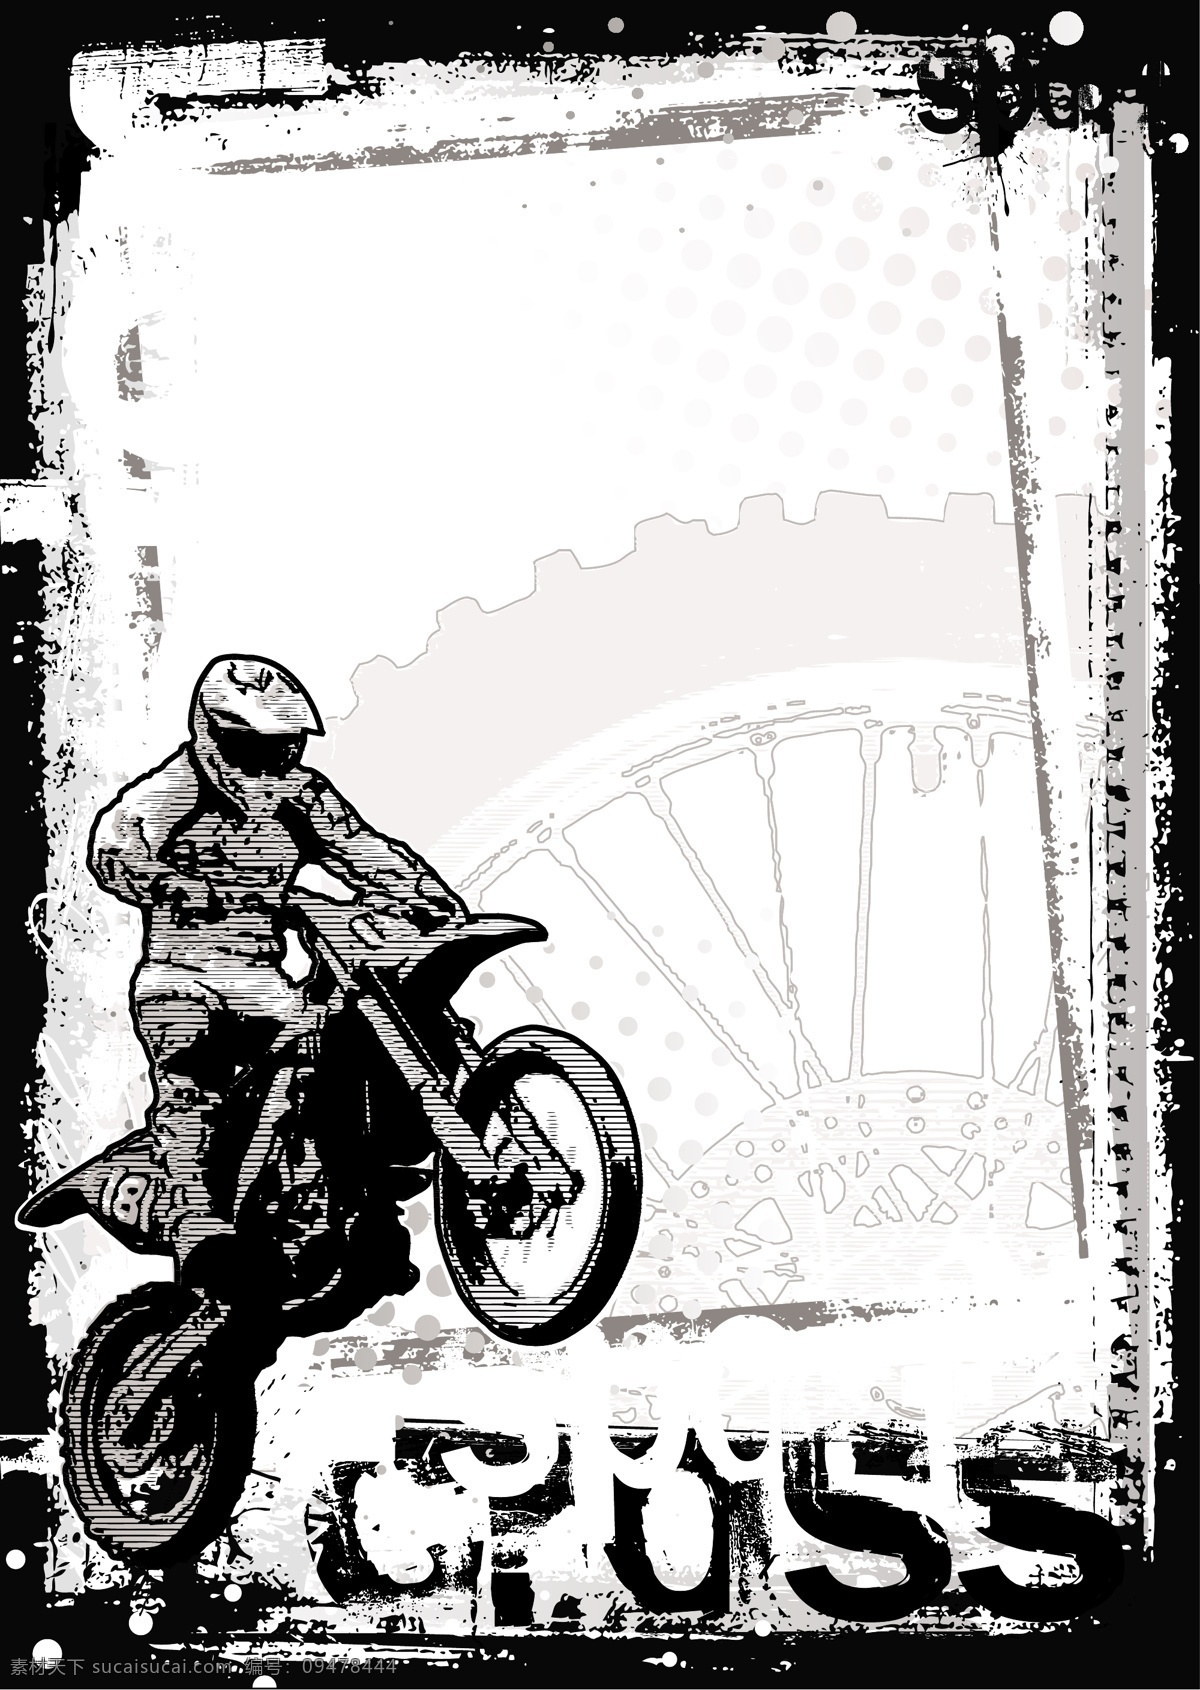 摩托车与人物 黑色字母 摩托车 黑色图案 手绘图案 卡通人物 交通工具 现代科技 矢量素材 白色